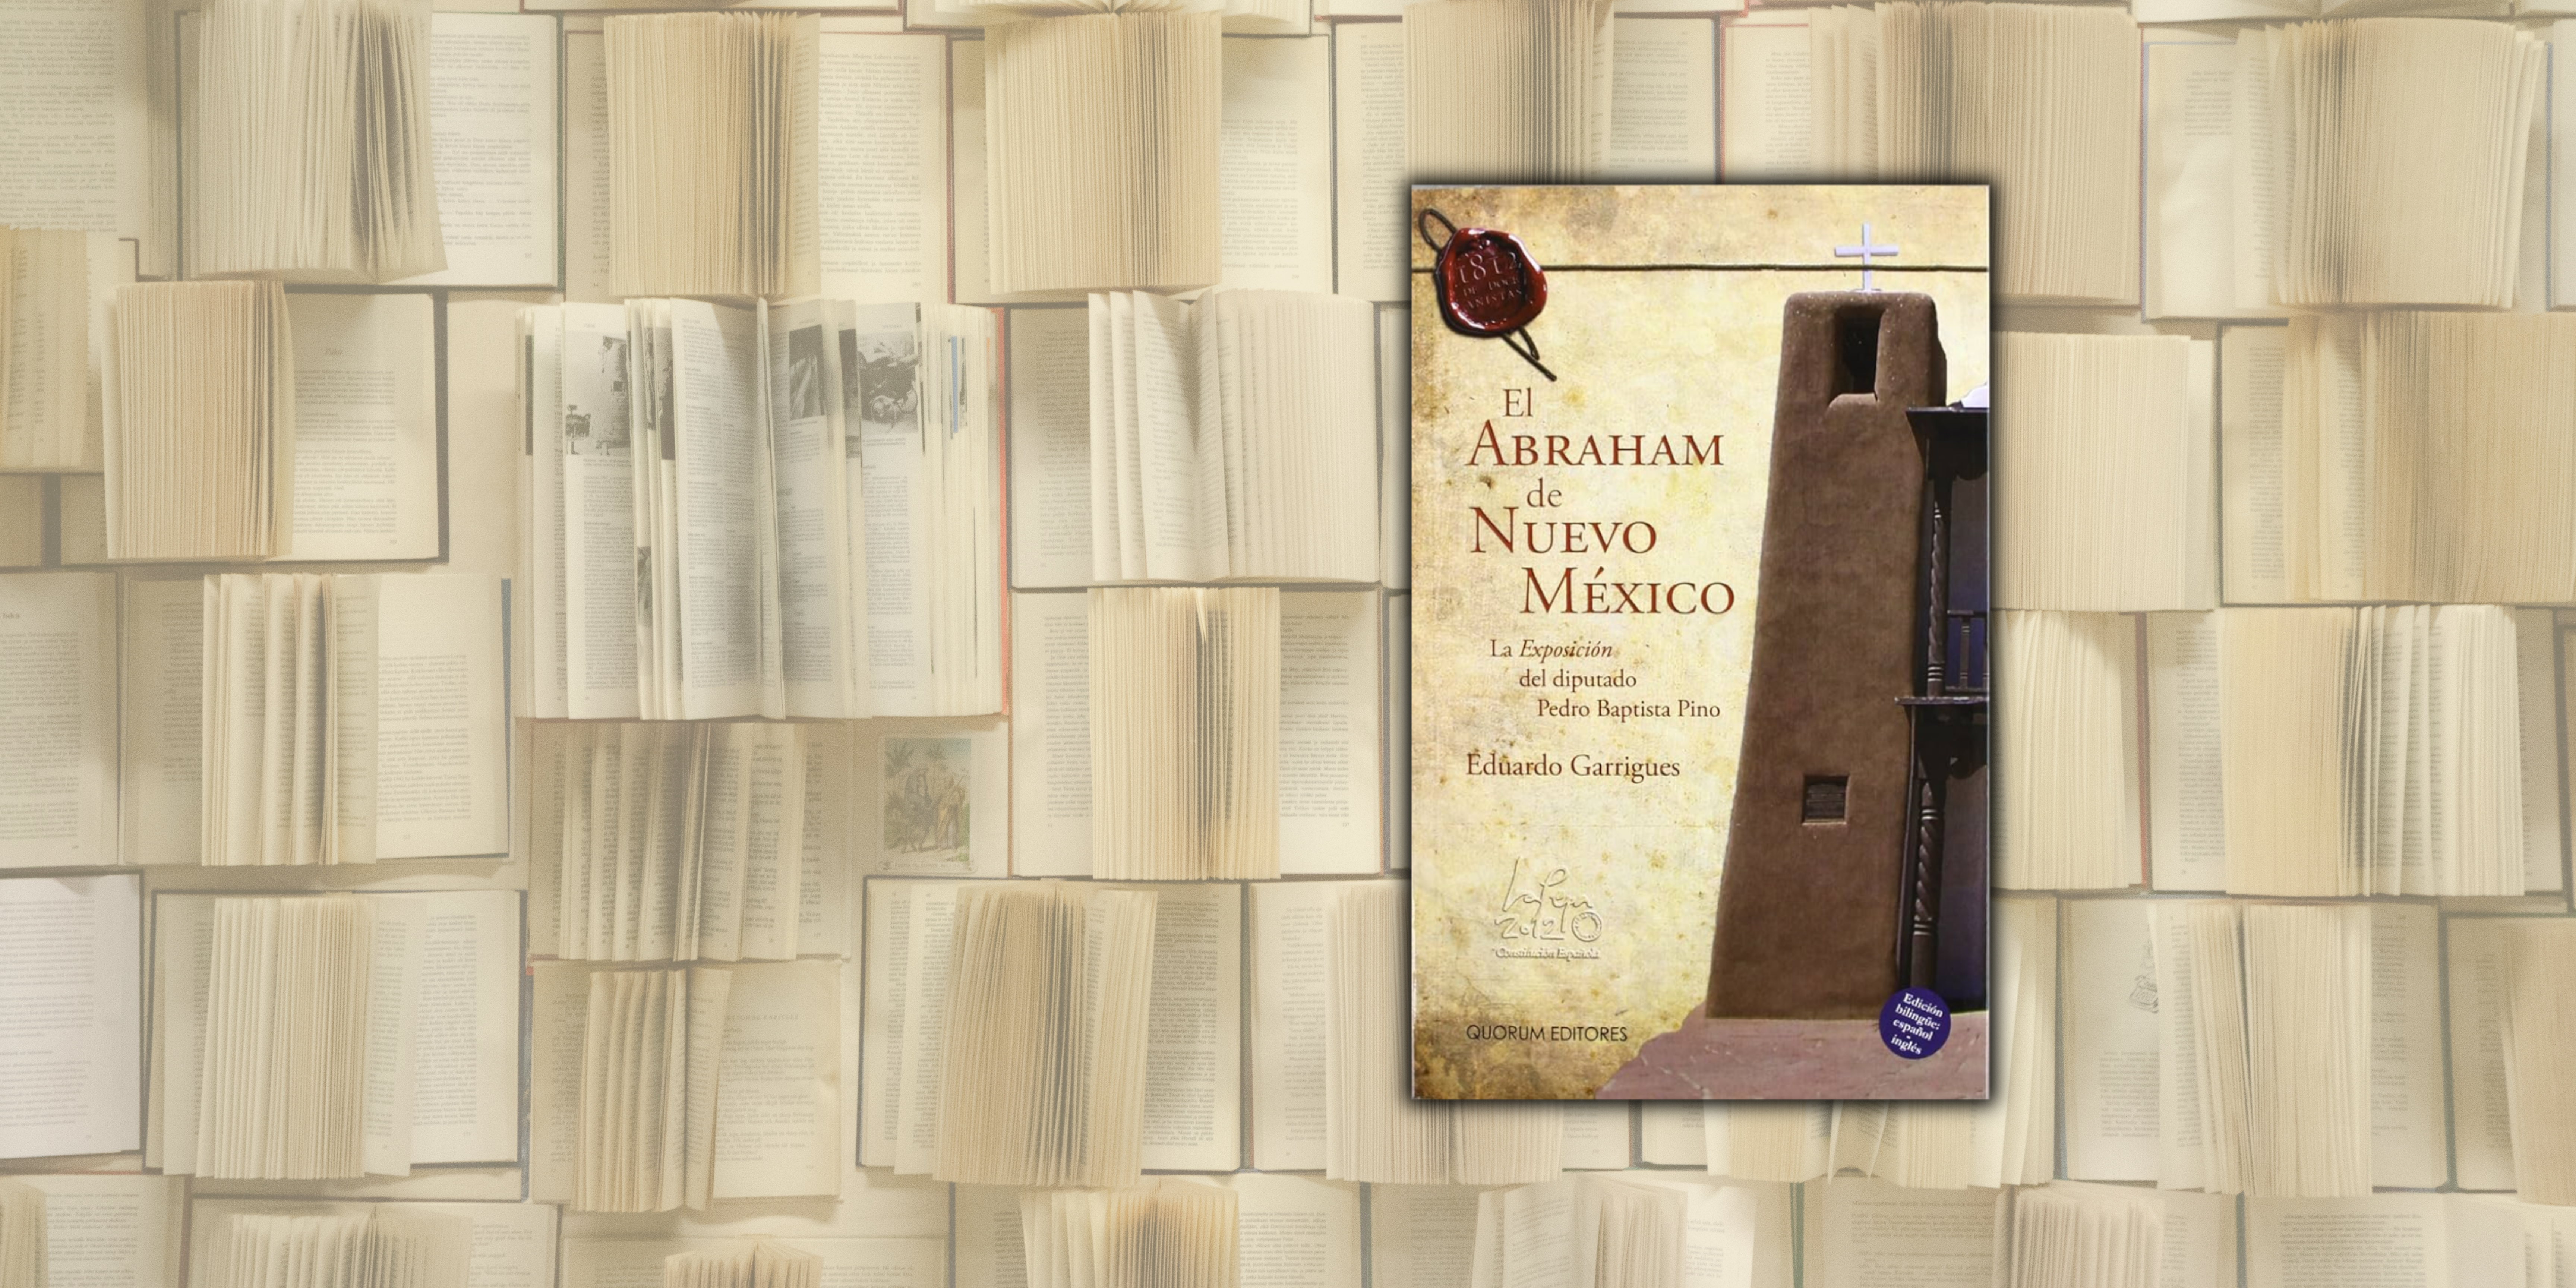 Book Presentation of “El Abraham de Nuevo México” with Amb. Eduardo Garrigues